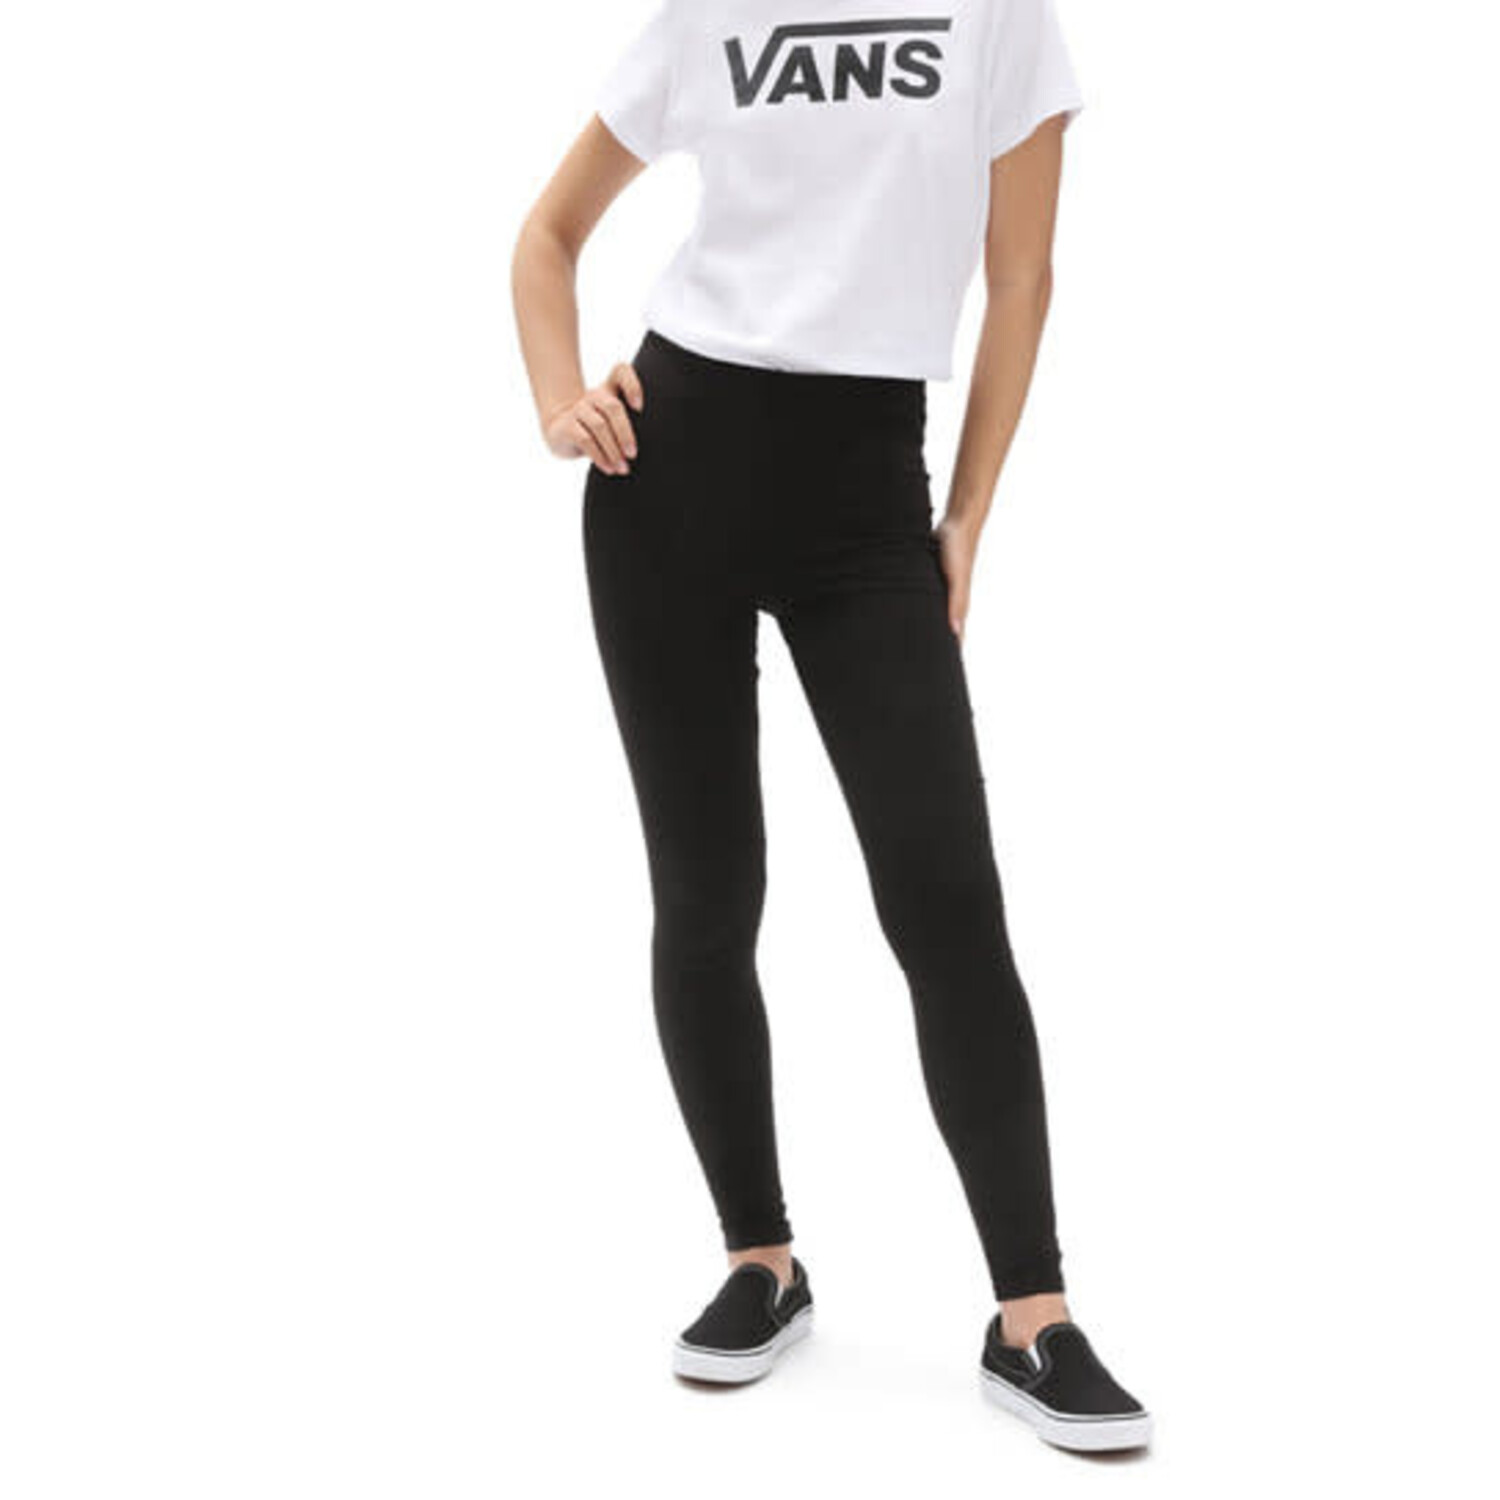 VANS Gym Leggings Girl 3-8 years online on YOOX United States